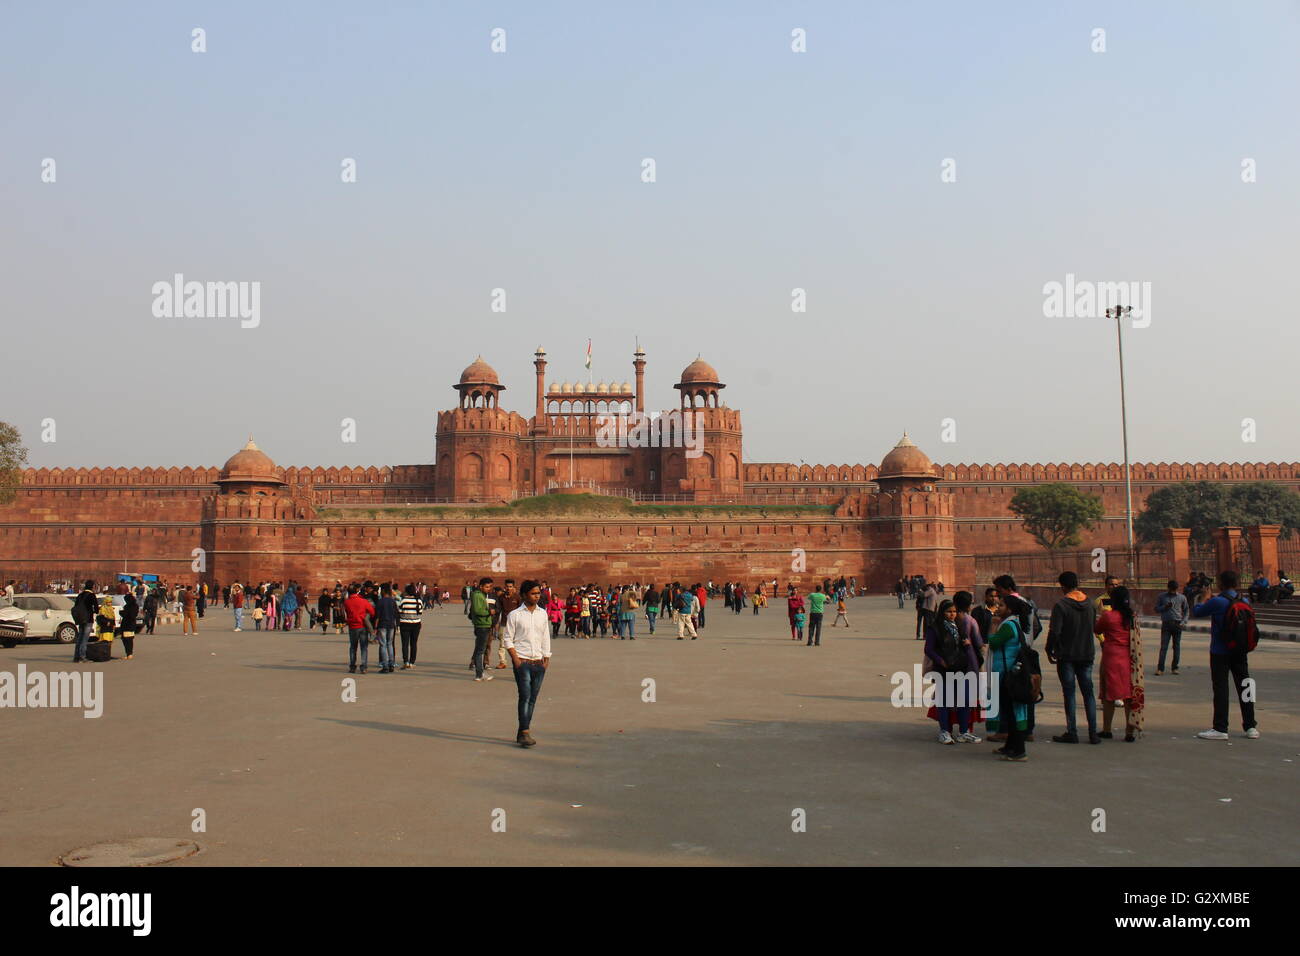 Das Rote Fort - die Residenz des Mughal Kaisers für fast 200 Jahre, bis 1857. Es befindet sich im Zentrum von Delhi. Stockfoto